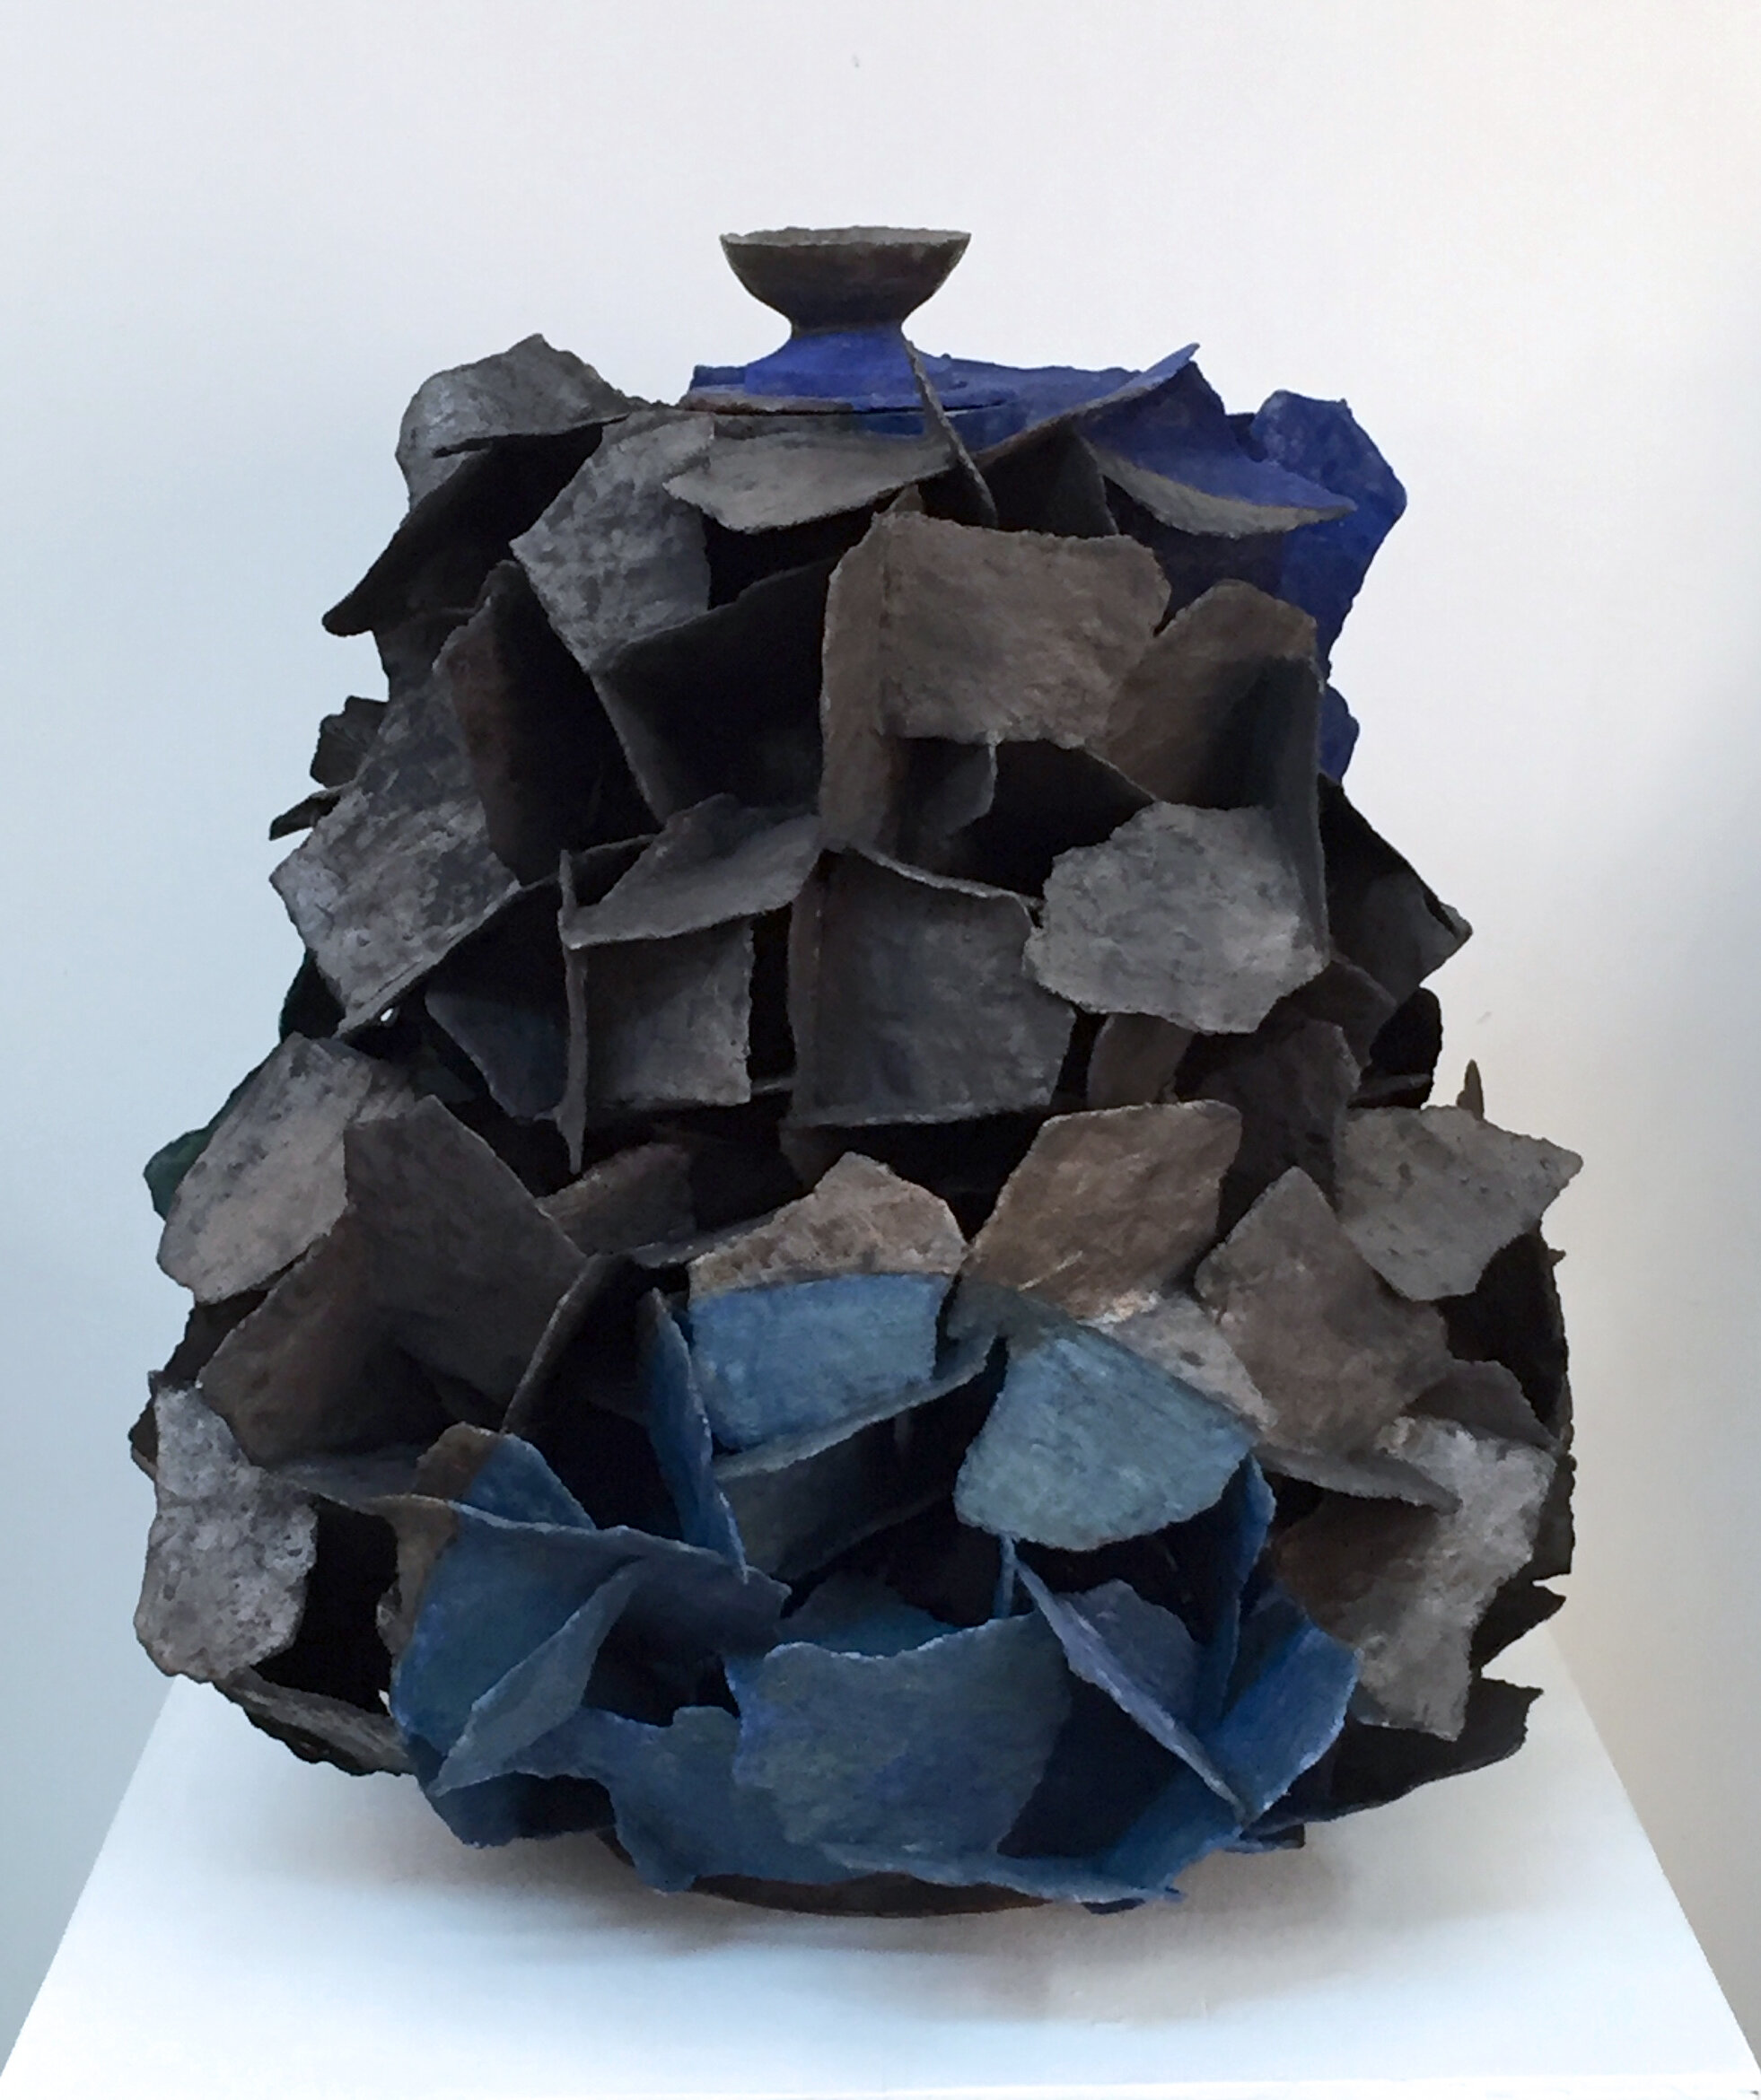 Linda Casbon, Tiled Form